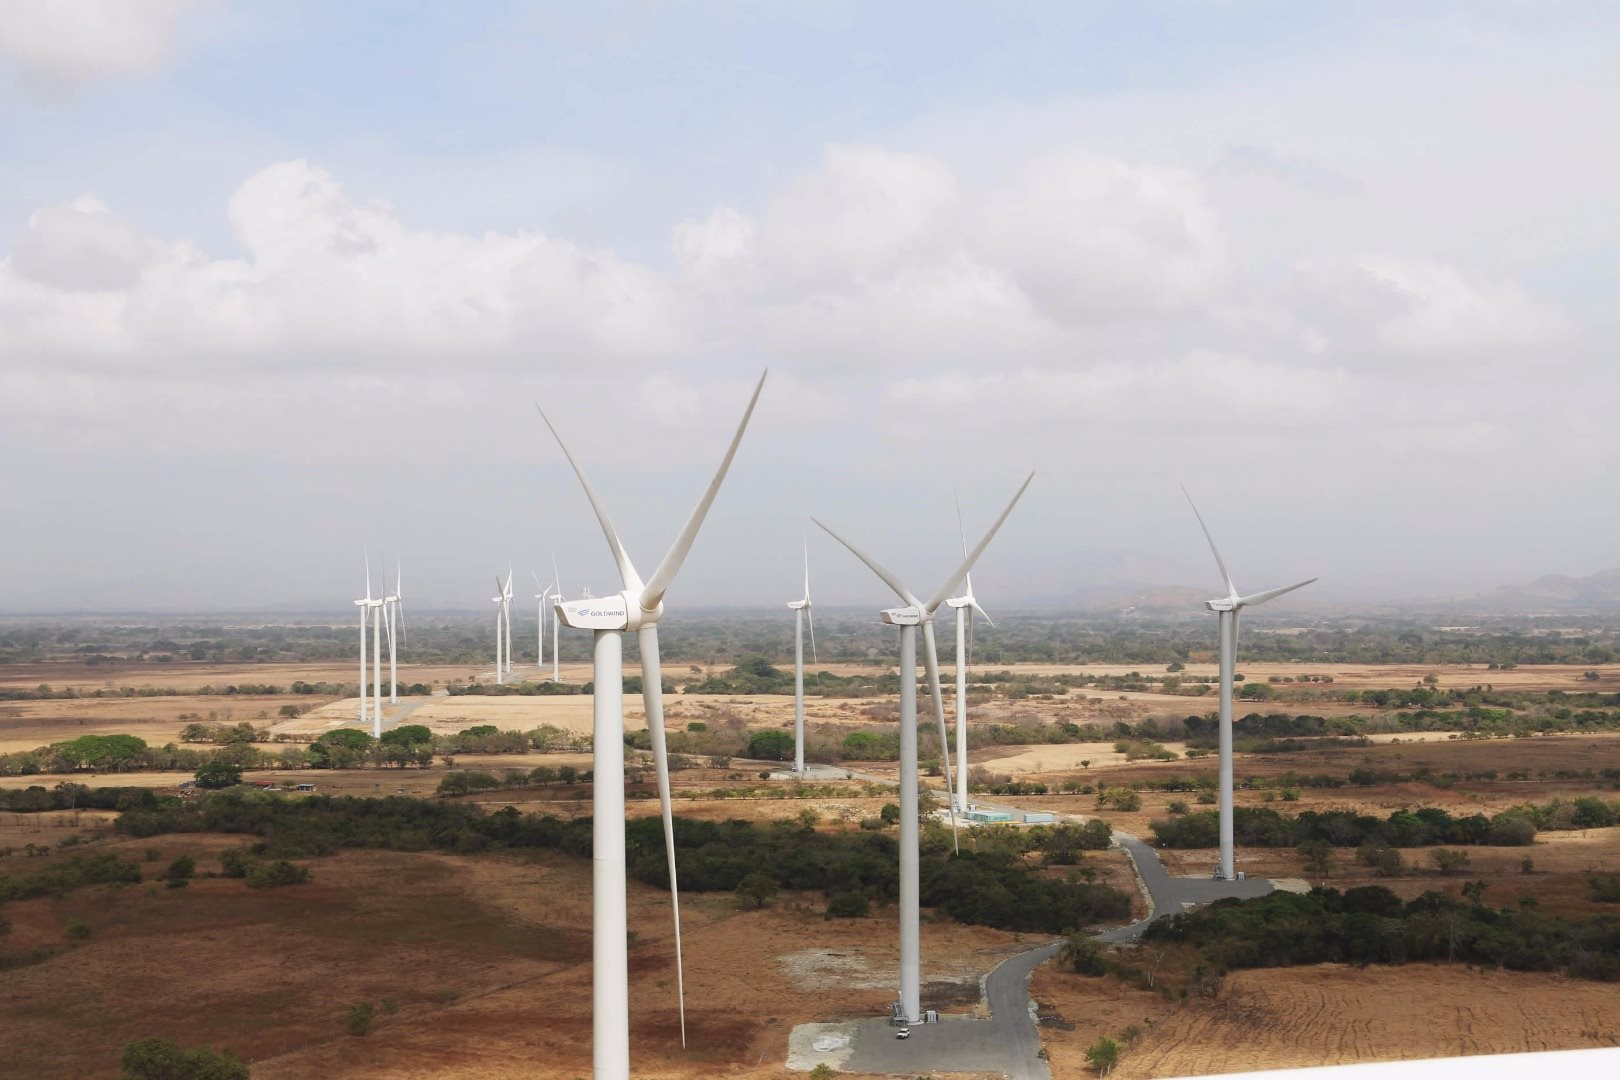 Penonome wind farm turbines, Panama